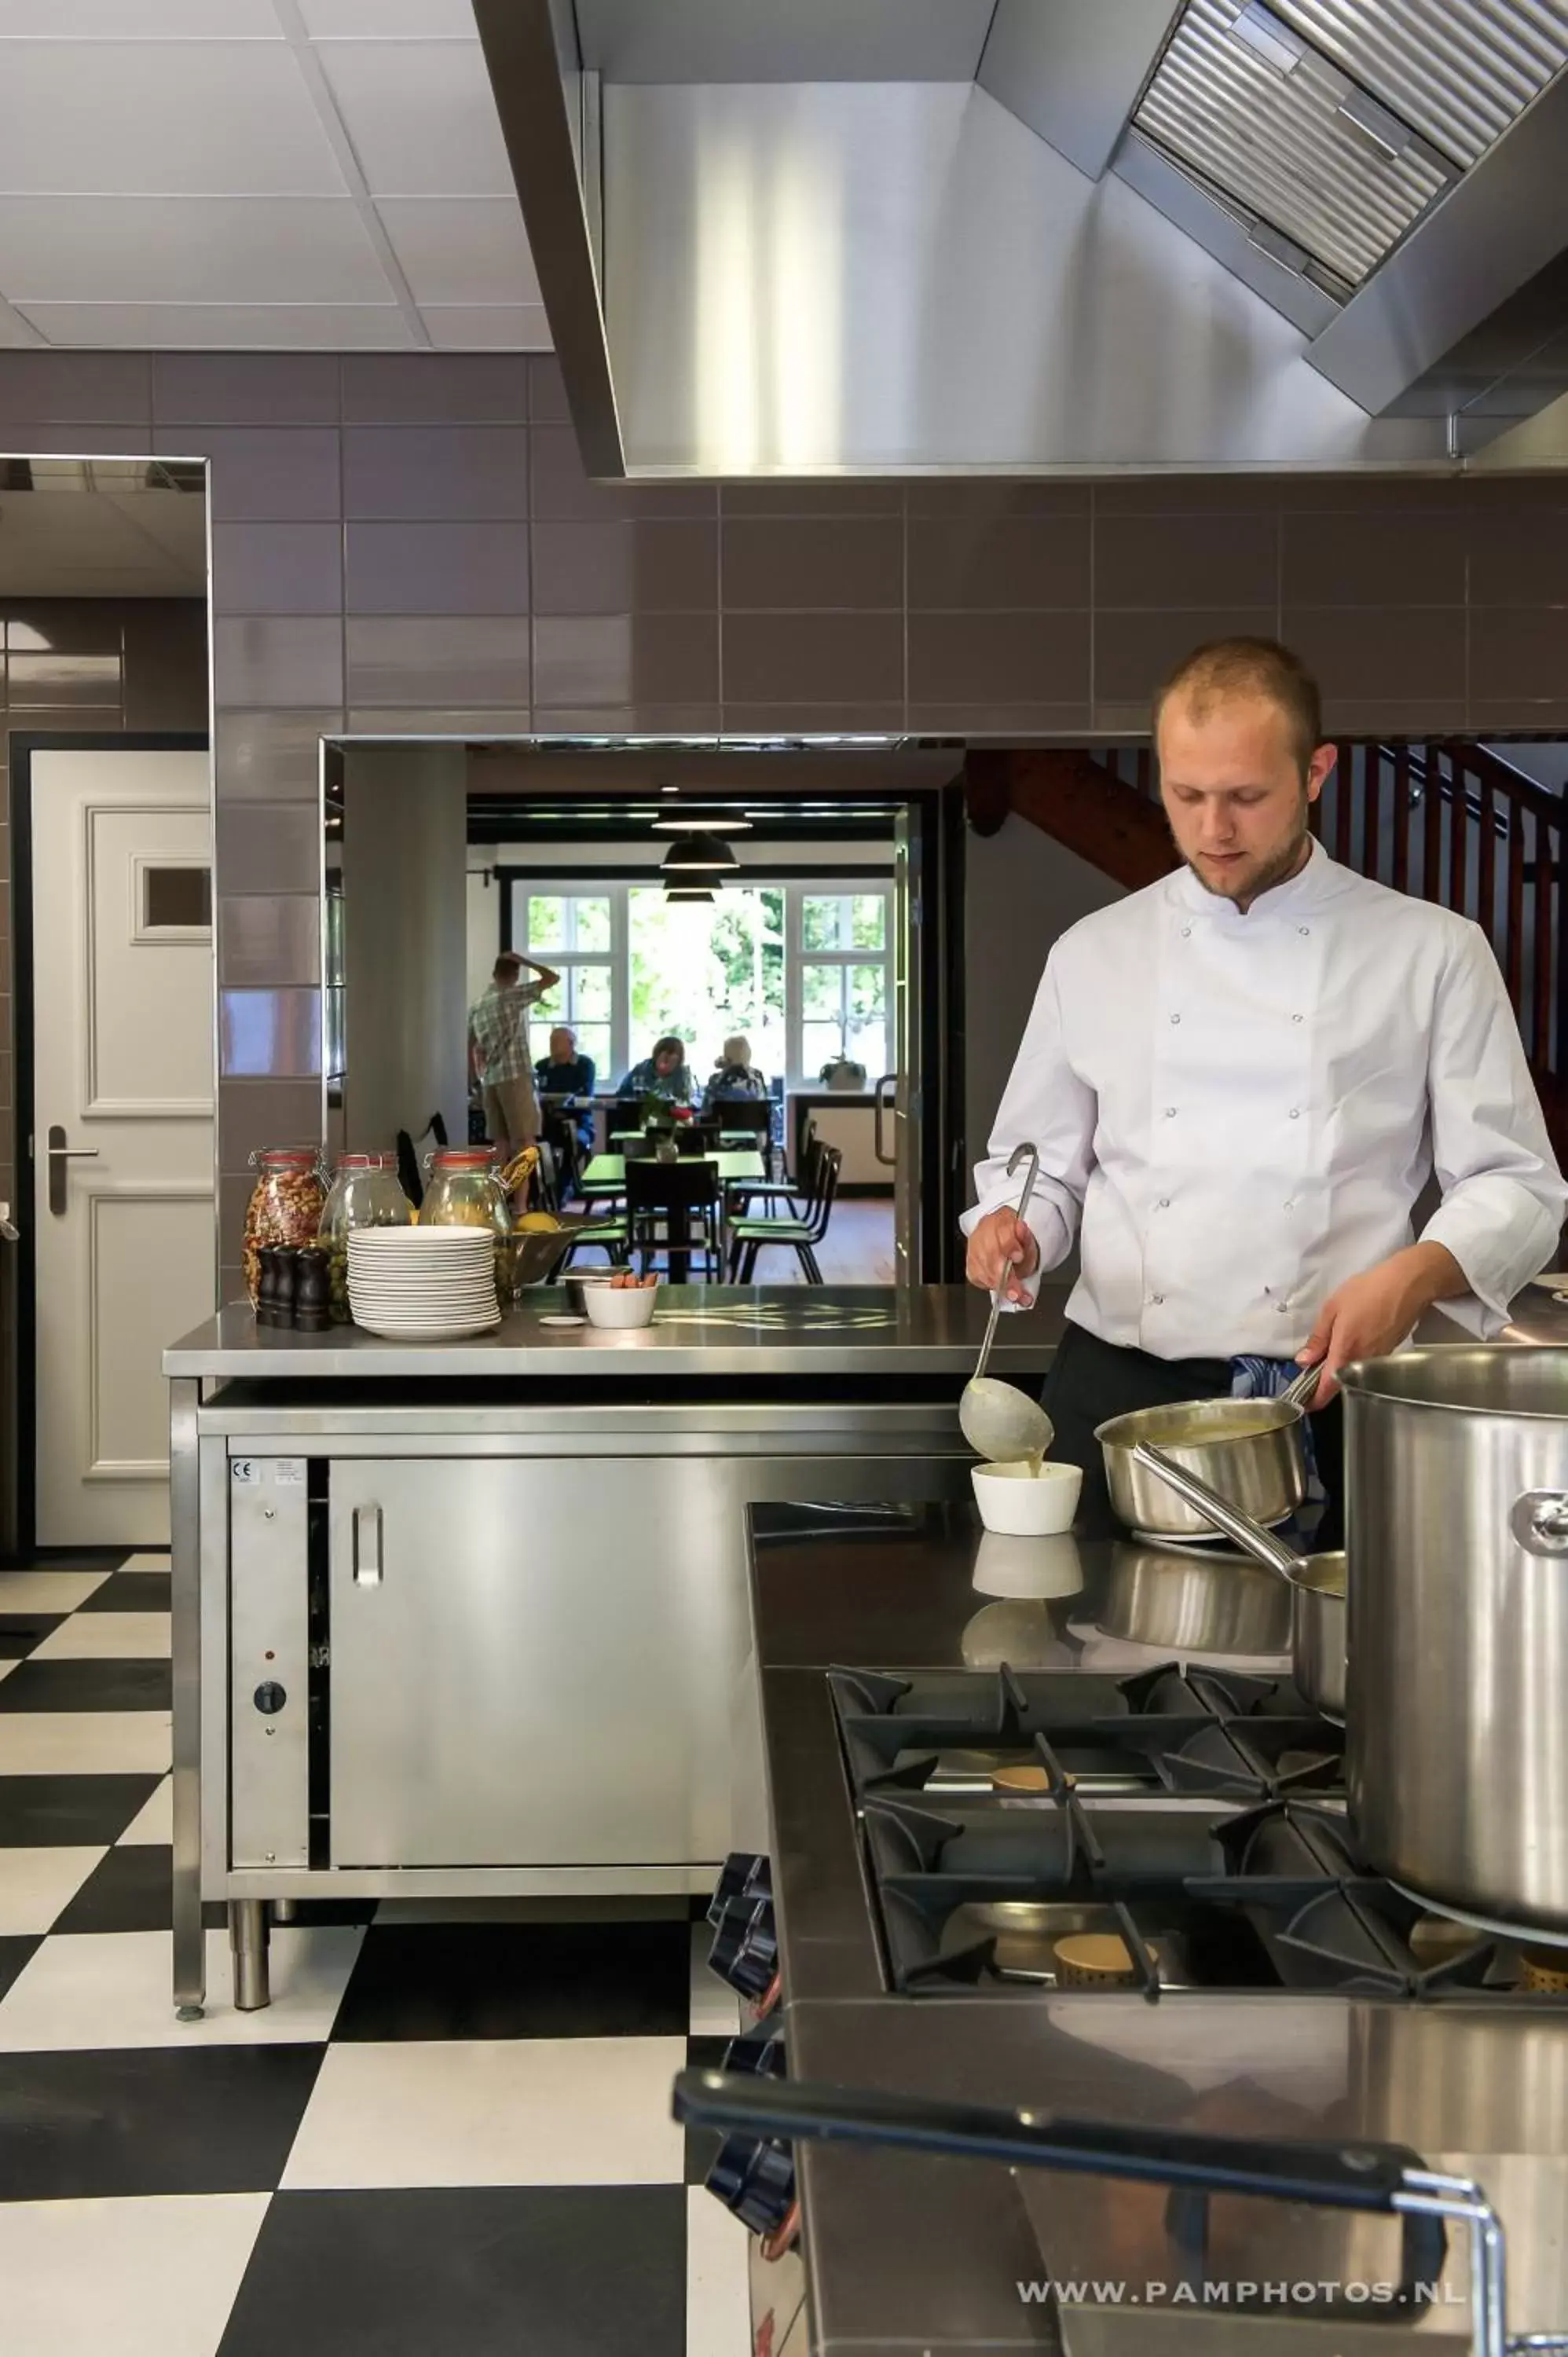 Staff, Kitchen/Kitchenette in Hotel Huize Koningsbosch